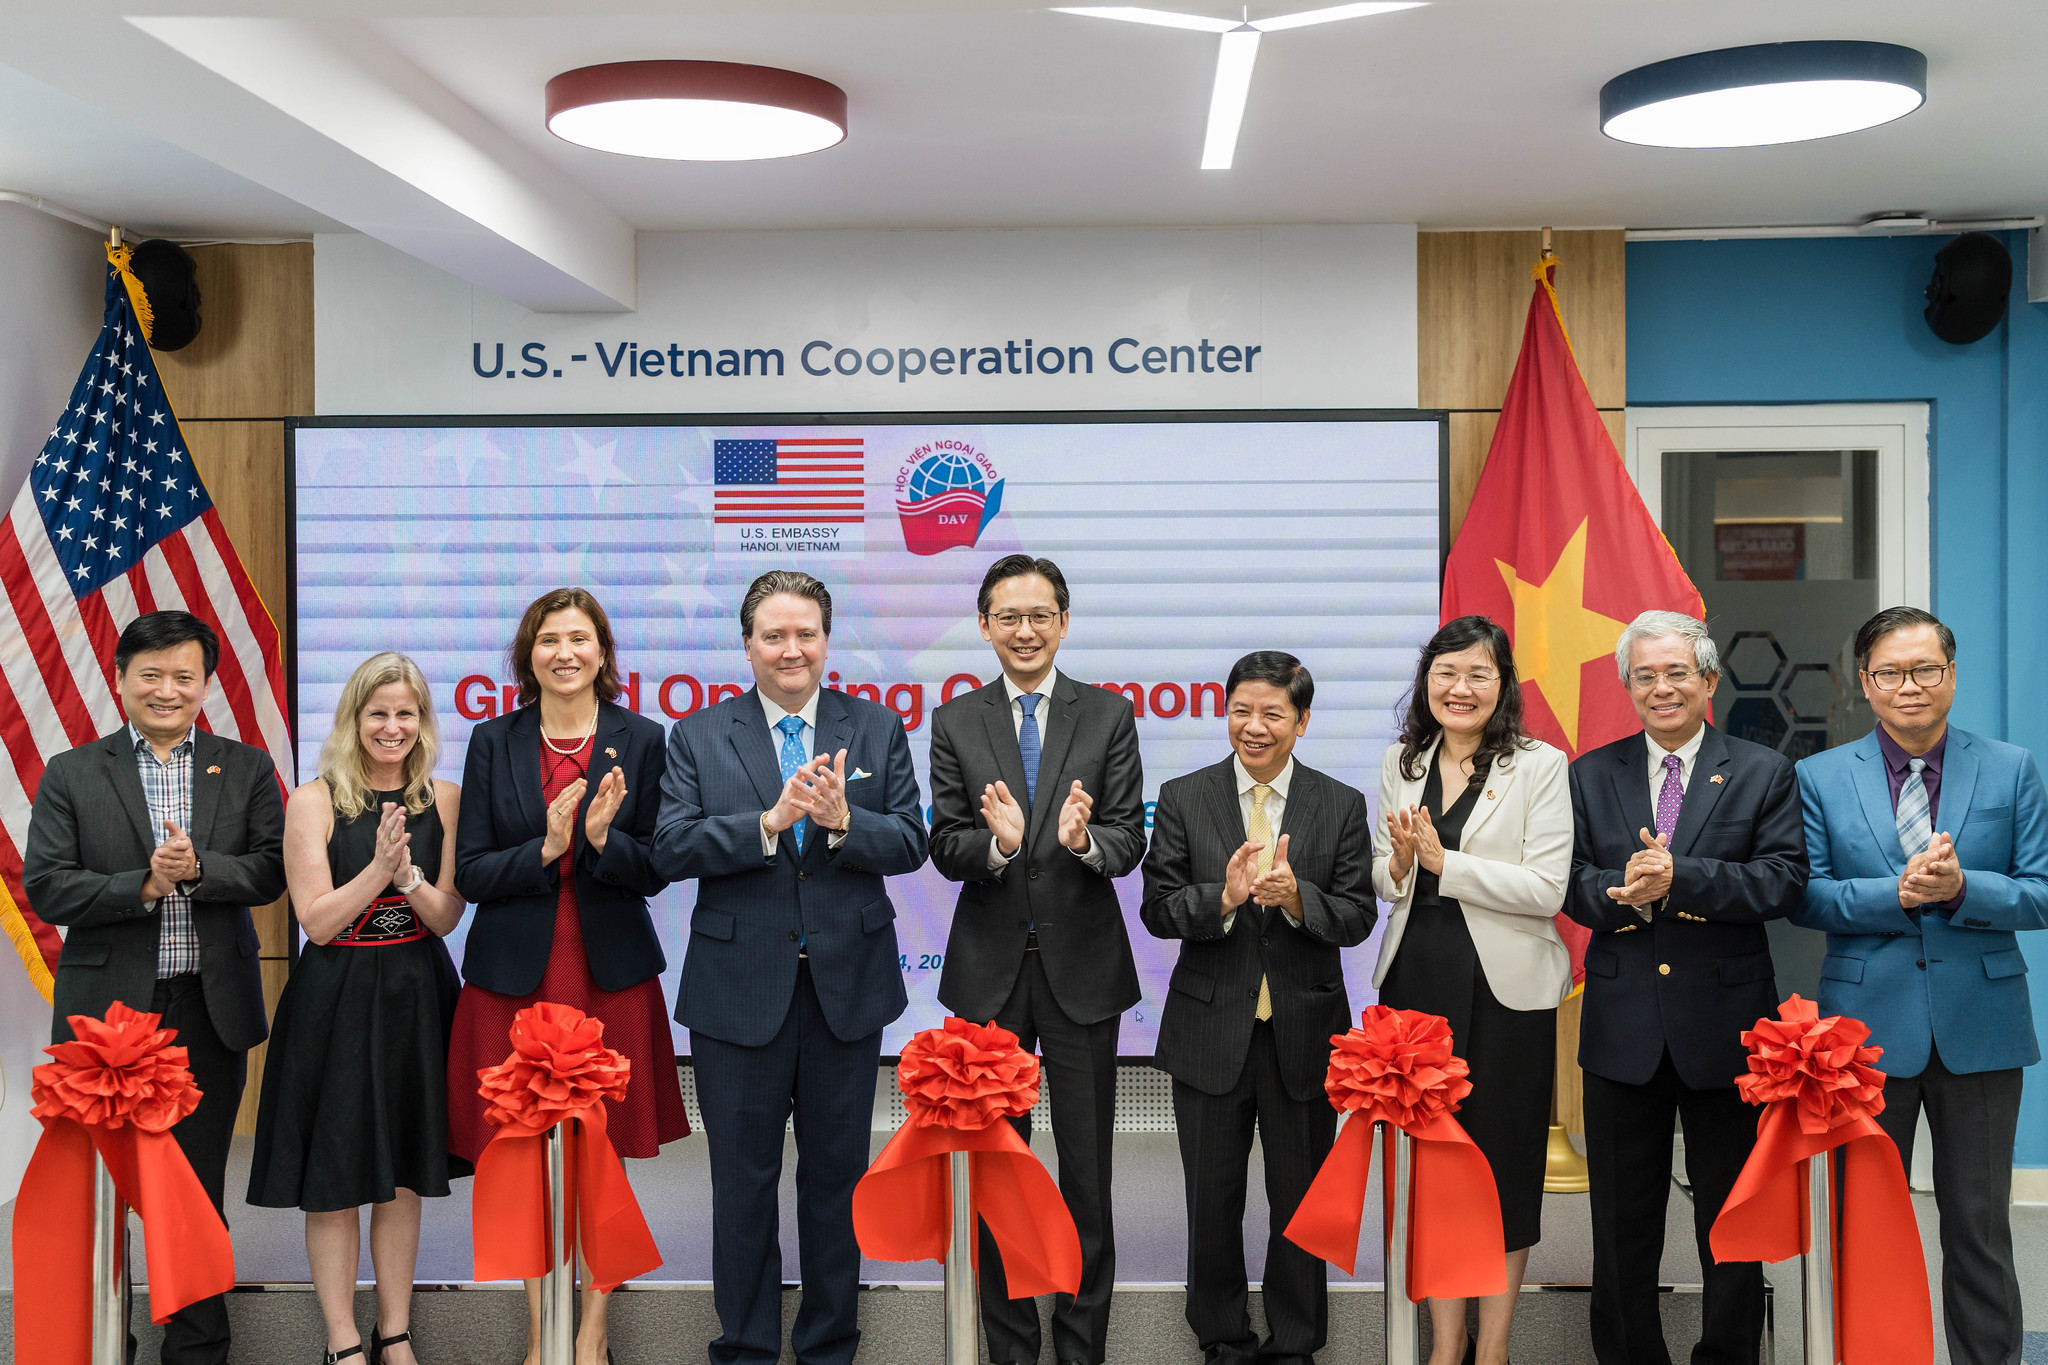 Khai trương Trung tâm Hợp tác Việt Nam - Hoa Kỳ (USVCC) tại Học viện Ngoại giao Việt Nam